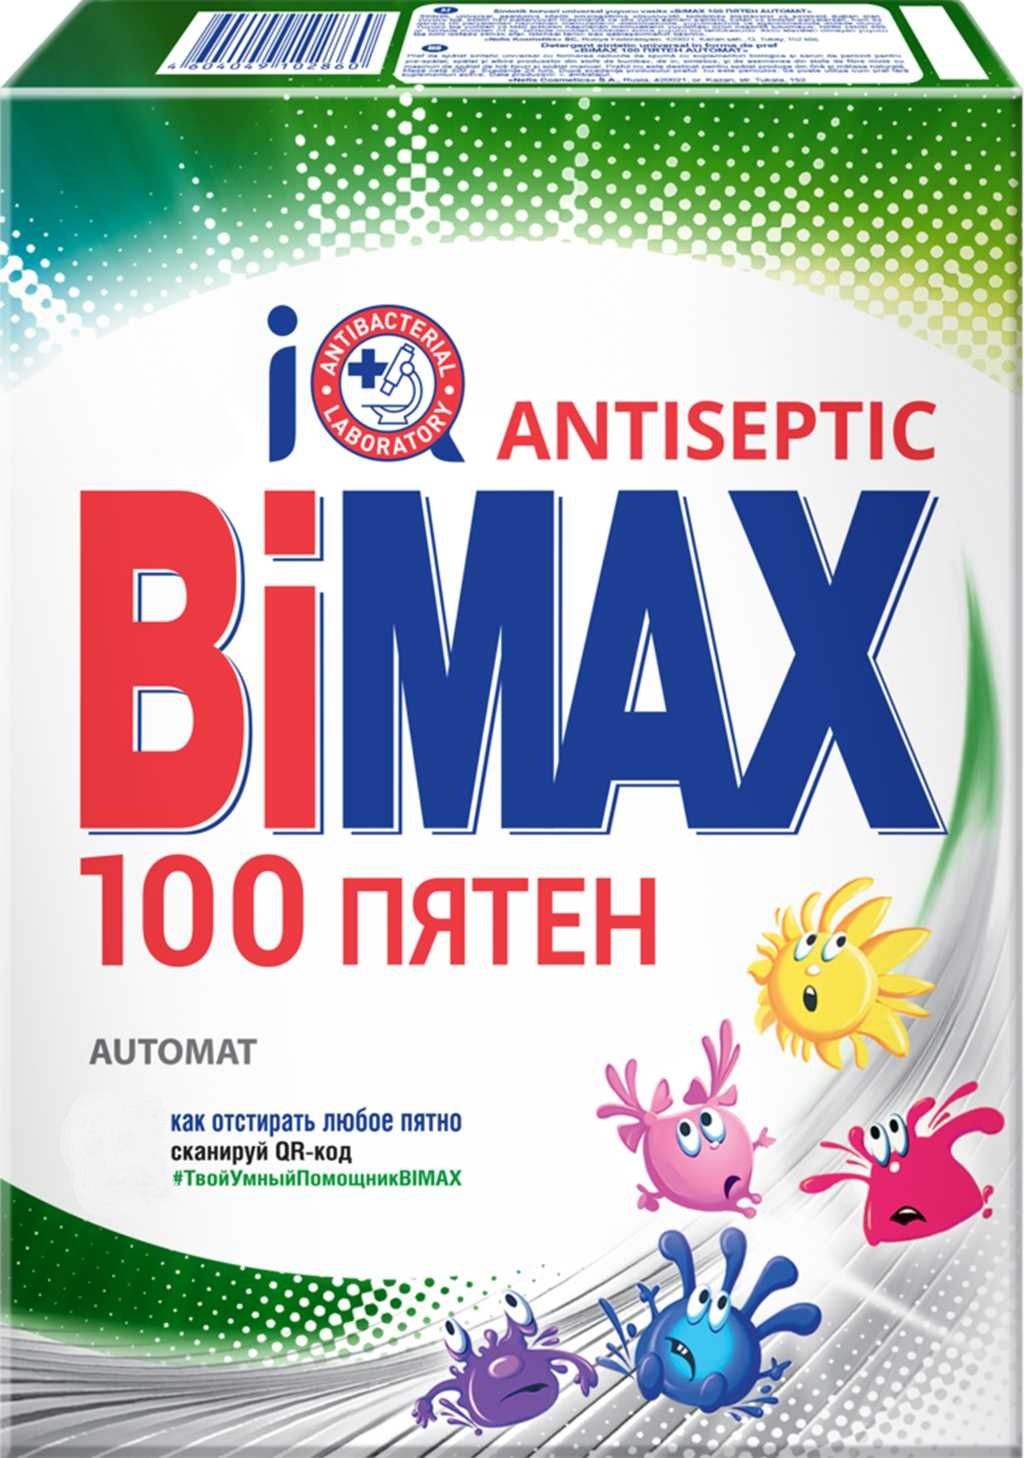 100 пятен. Стиральный порошок BIMAX 100 пятен. Порошок стиральный BIMAX 100 пятен автомат 400г. Стиральный порошок BIMAX 100 пятен автомат 6 кг. Порошок BIMAX, 100 пятен, Color automat, 400 г..